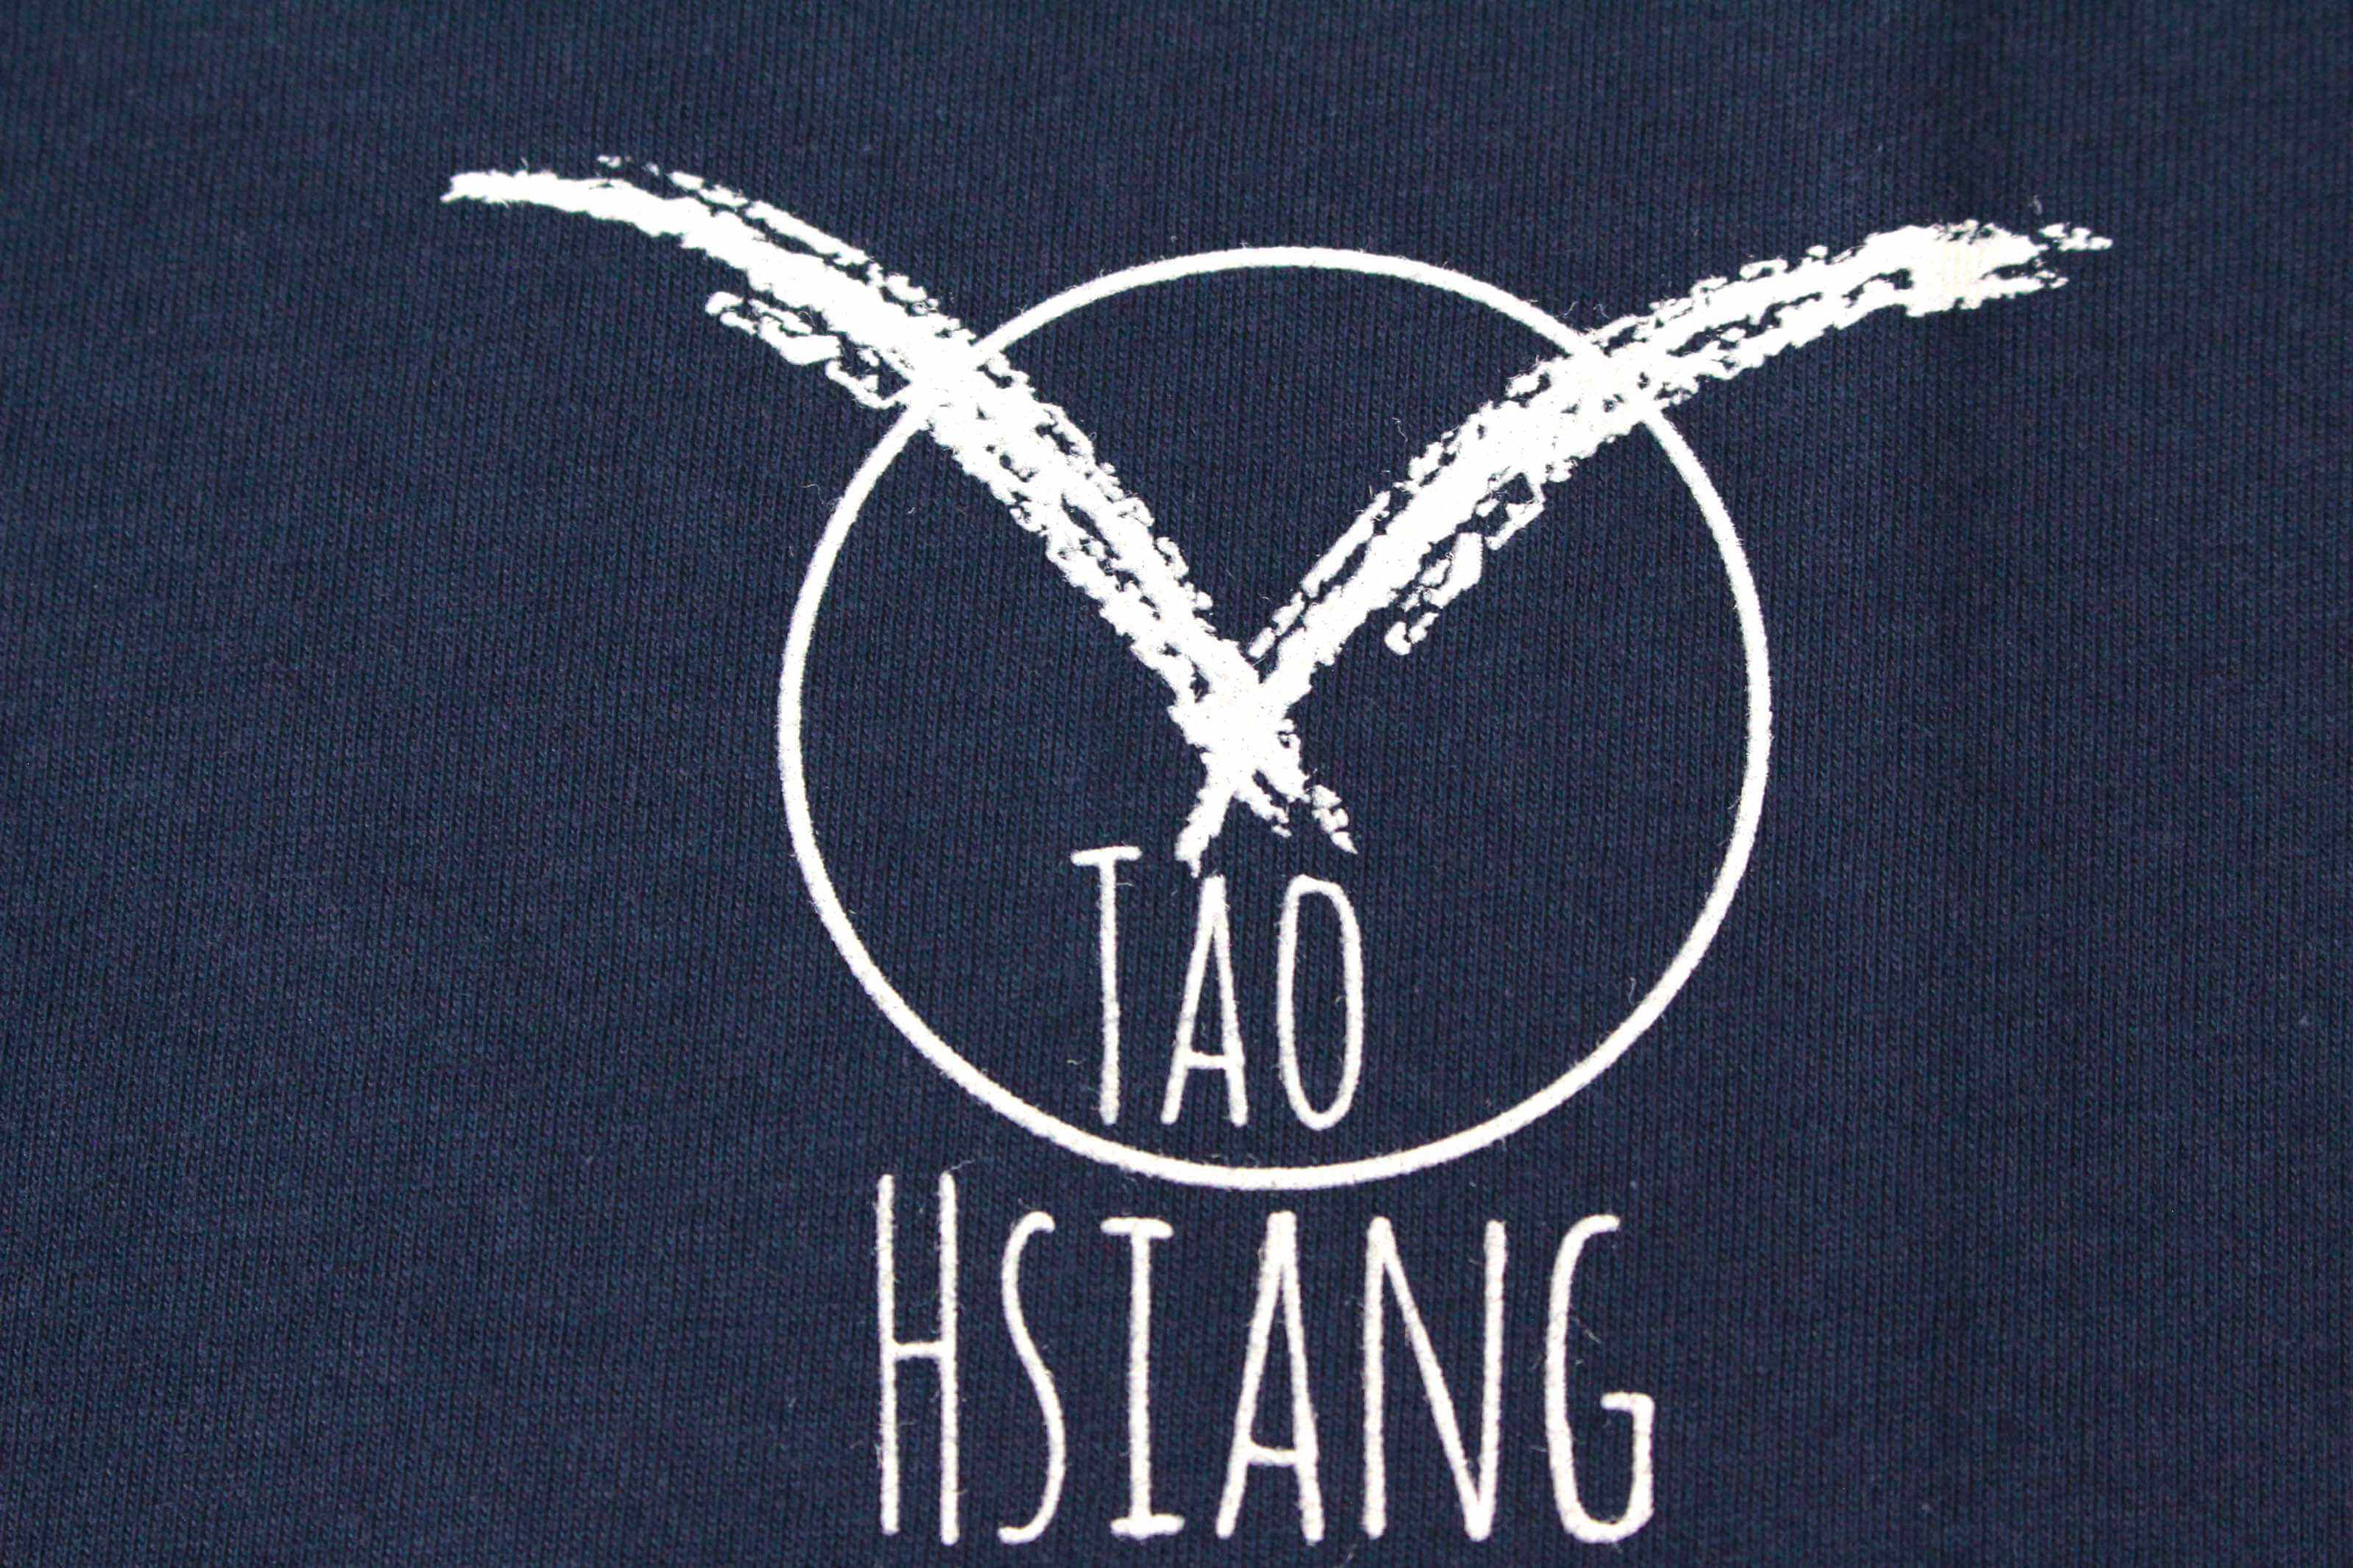 客製化T恤- HSIANG 客製化T恤的第3張圖(客製化公司制服、班服製作、團體服製作等示意或作品圖)